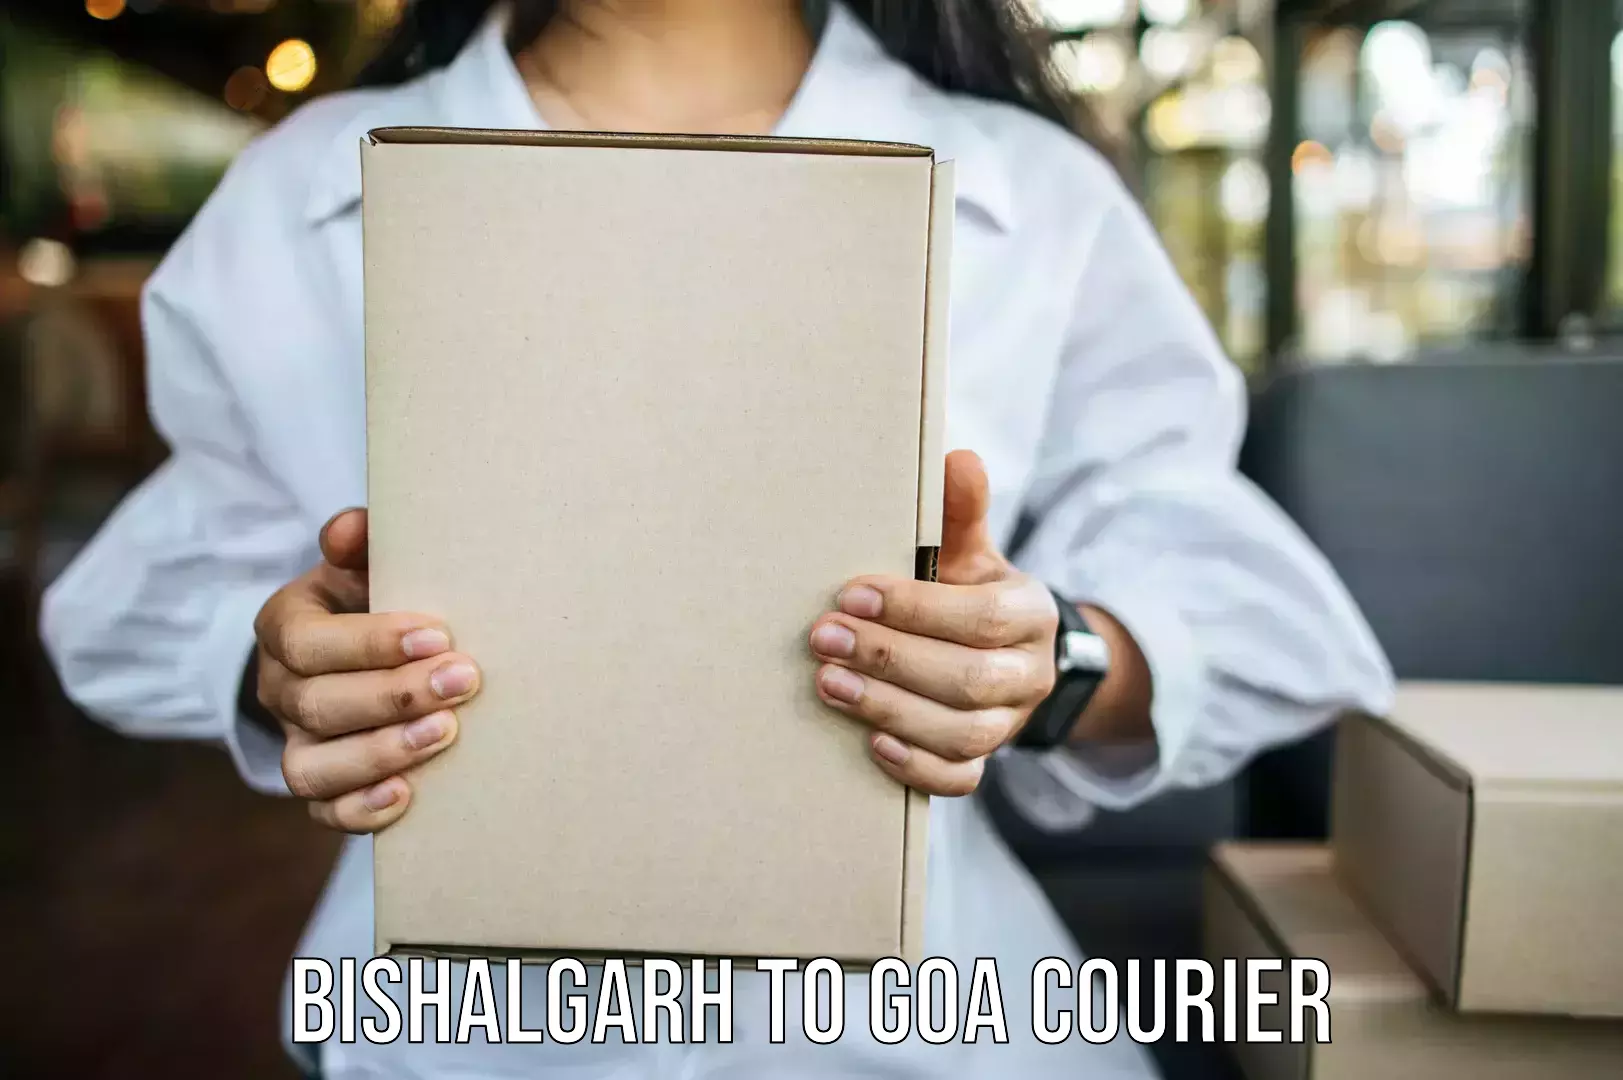 Furniture transport experts Bishalgarh to Ponda